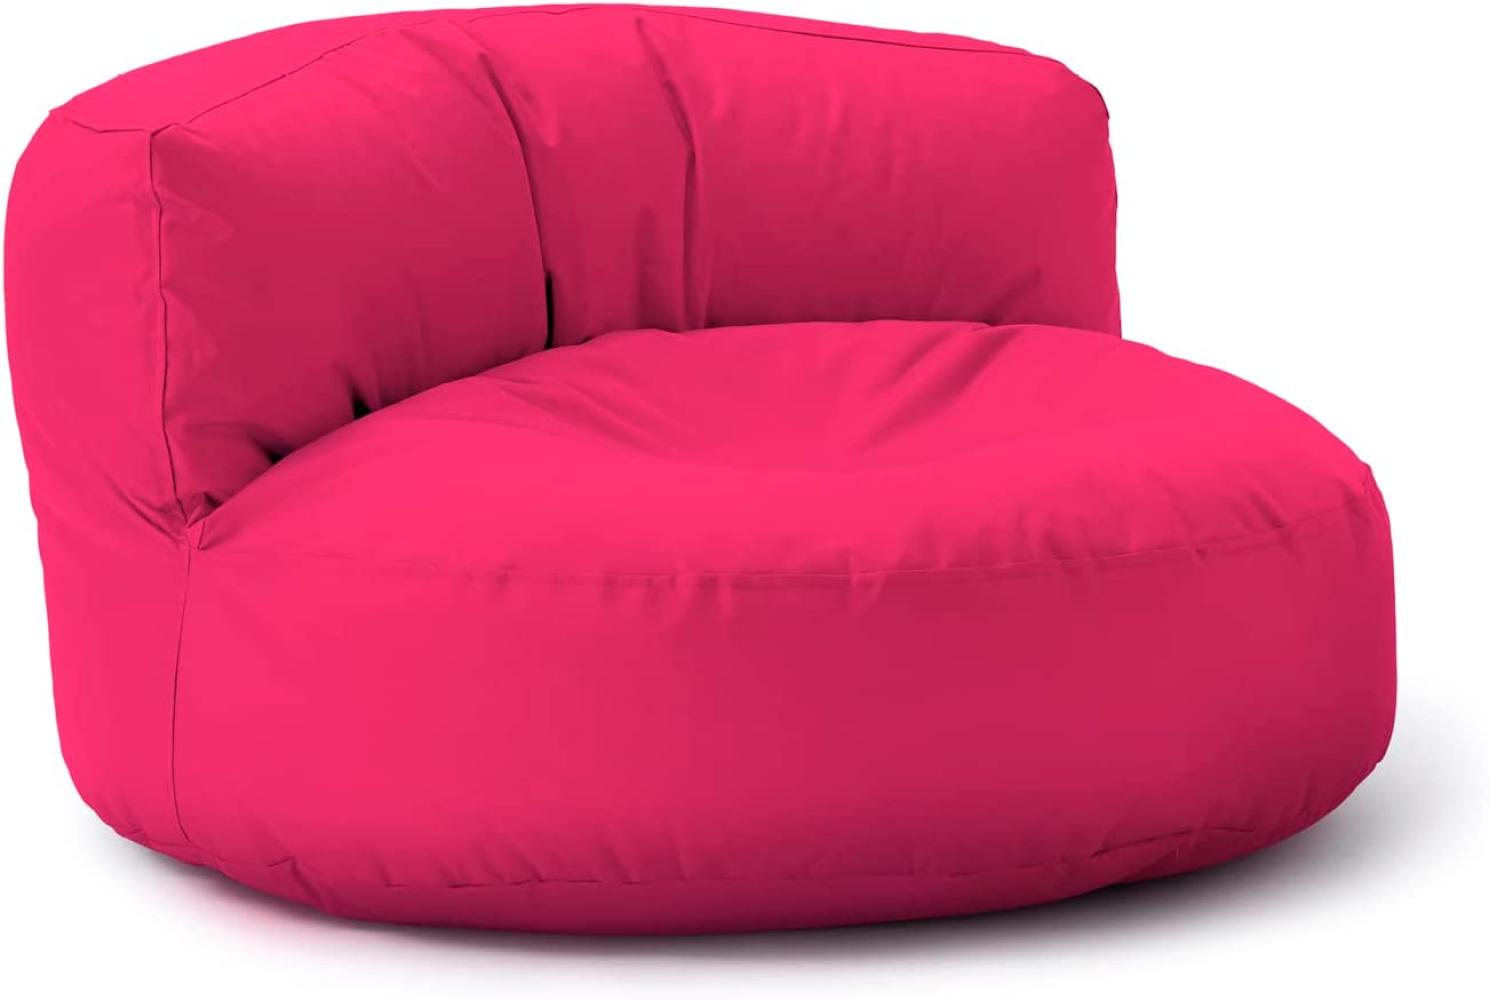 Lumaland Outdoor Sitzsack-Lounge, Rundes Sitzsack-Sofa für draußen, 320l Füllung, 90 x 50 cm, Pink Bild 1